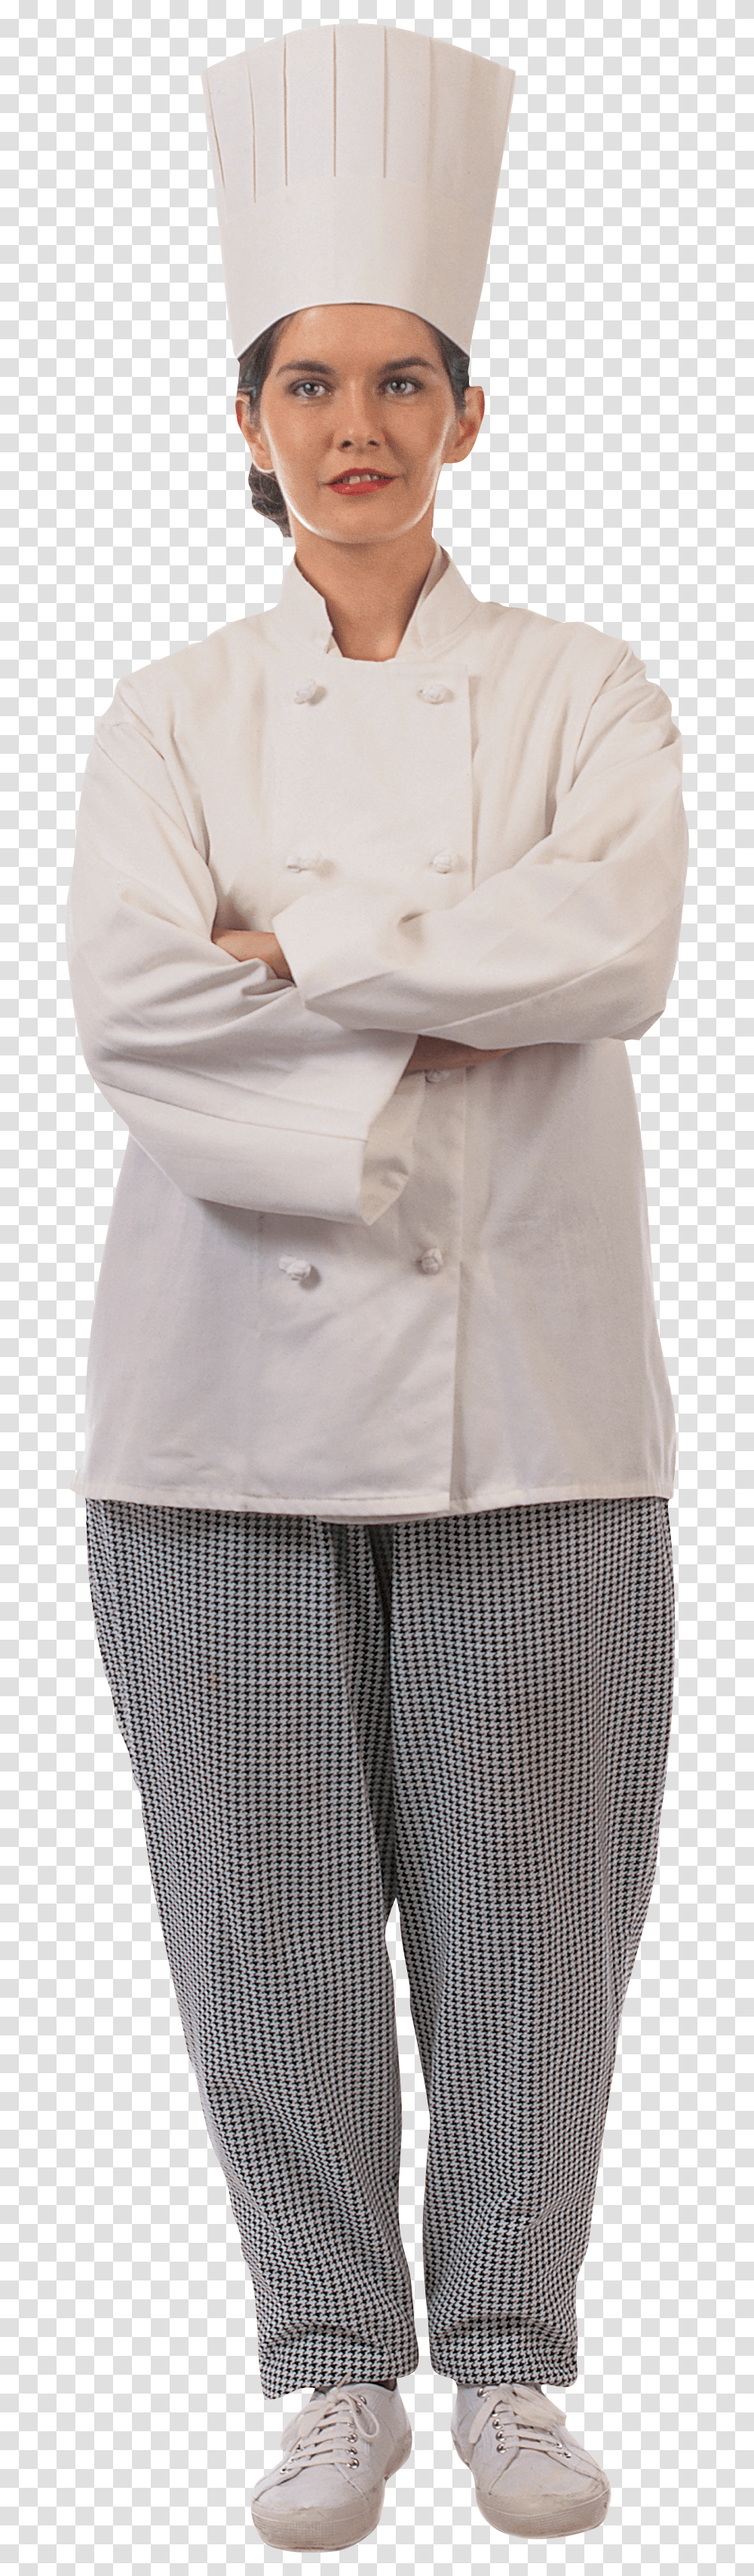 Chef, Person, Coat, Lab Coat Transparent Png